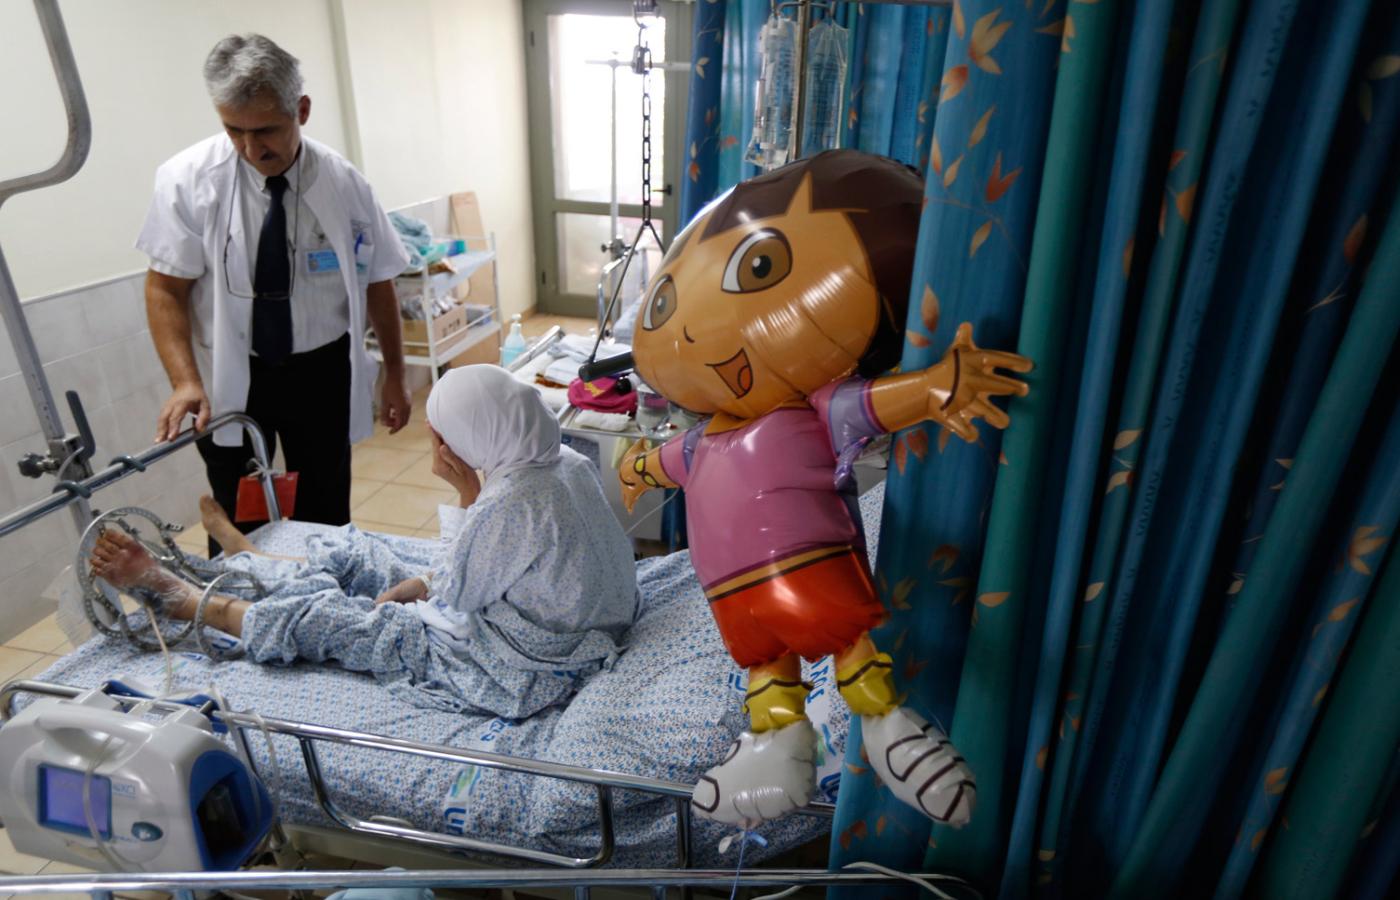 Ranna syryjska dziewczynka w izraelskim centrum medycznym ZIV.